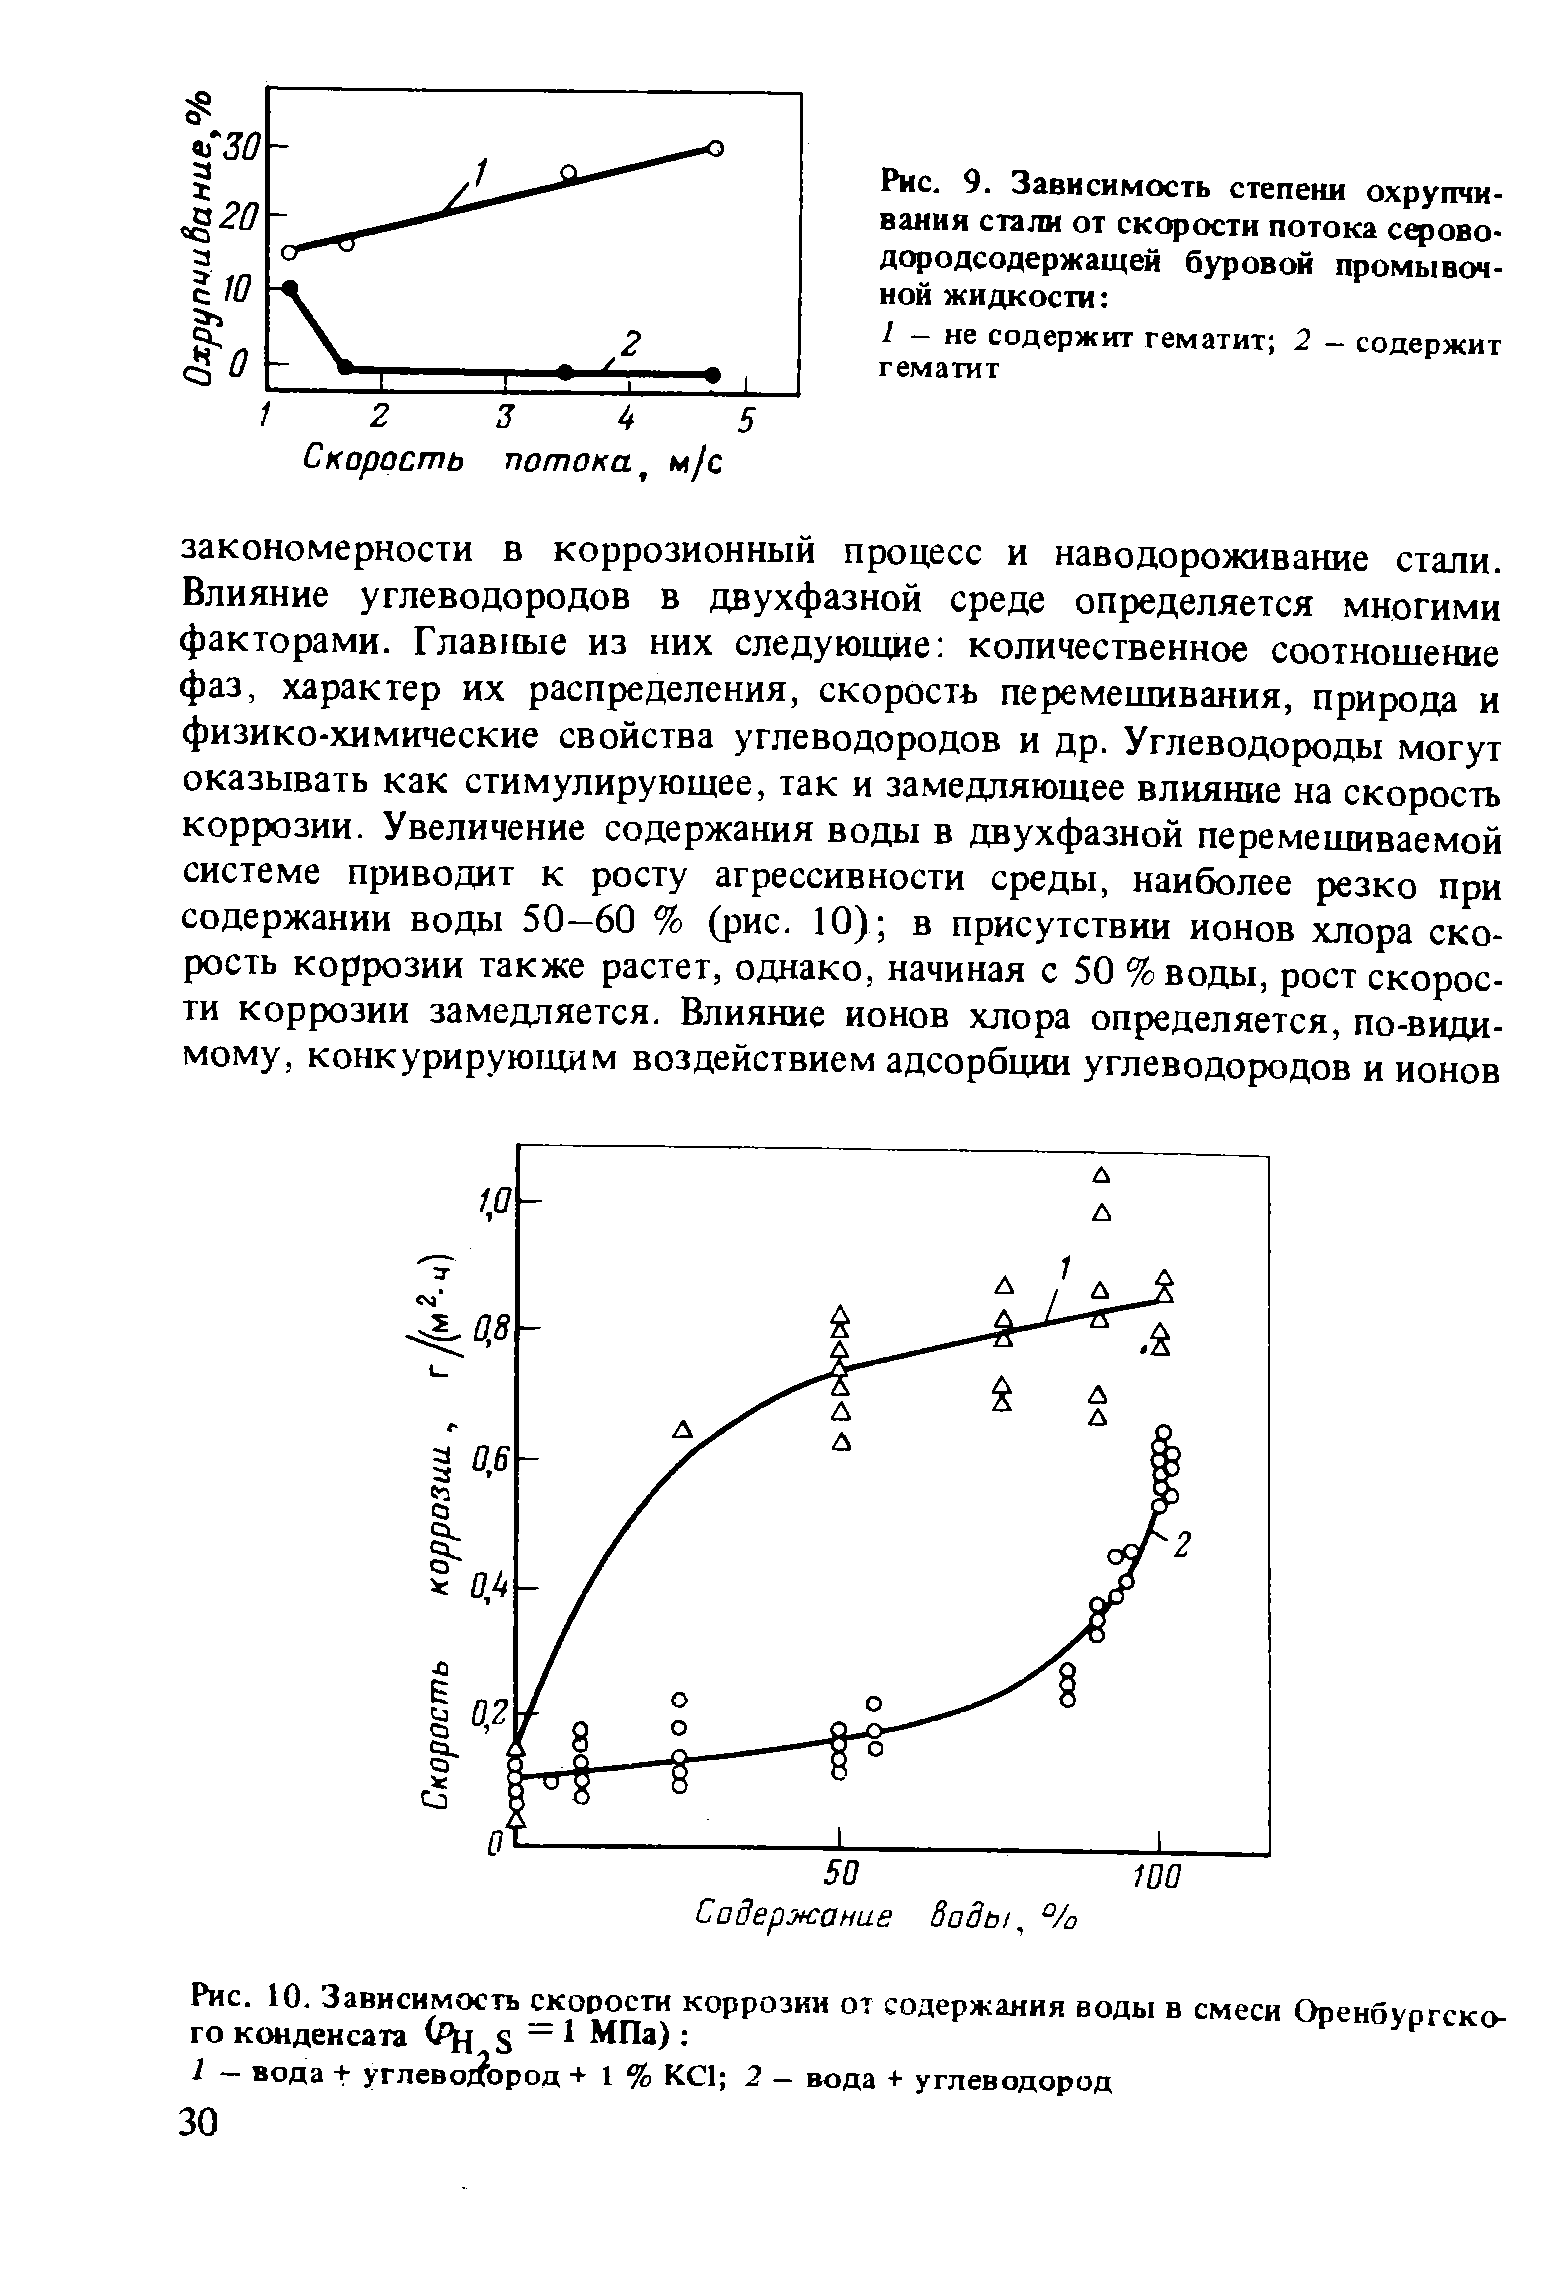 Рис. 10. Зависимость <a href="/info/39683">скорости коррозии</a> от содержания воды в смеси Оренбургского конденсата (Рц s МПа) 